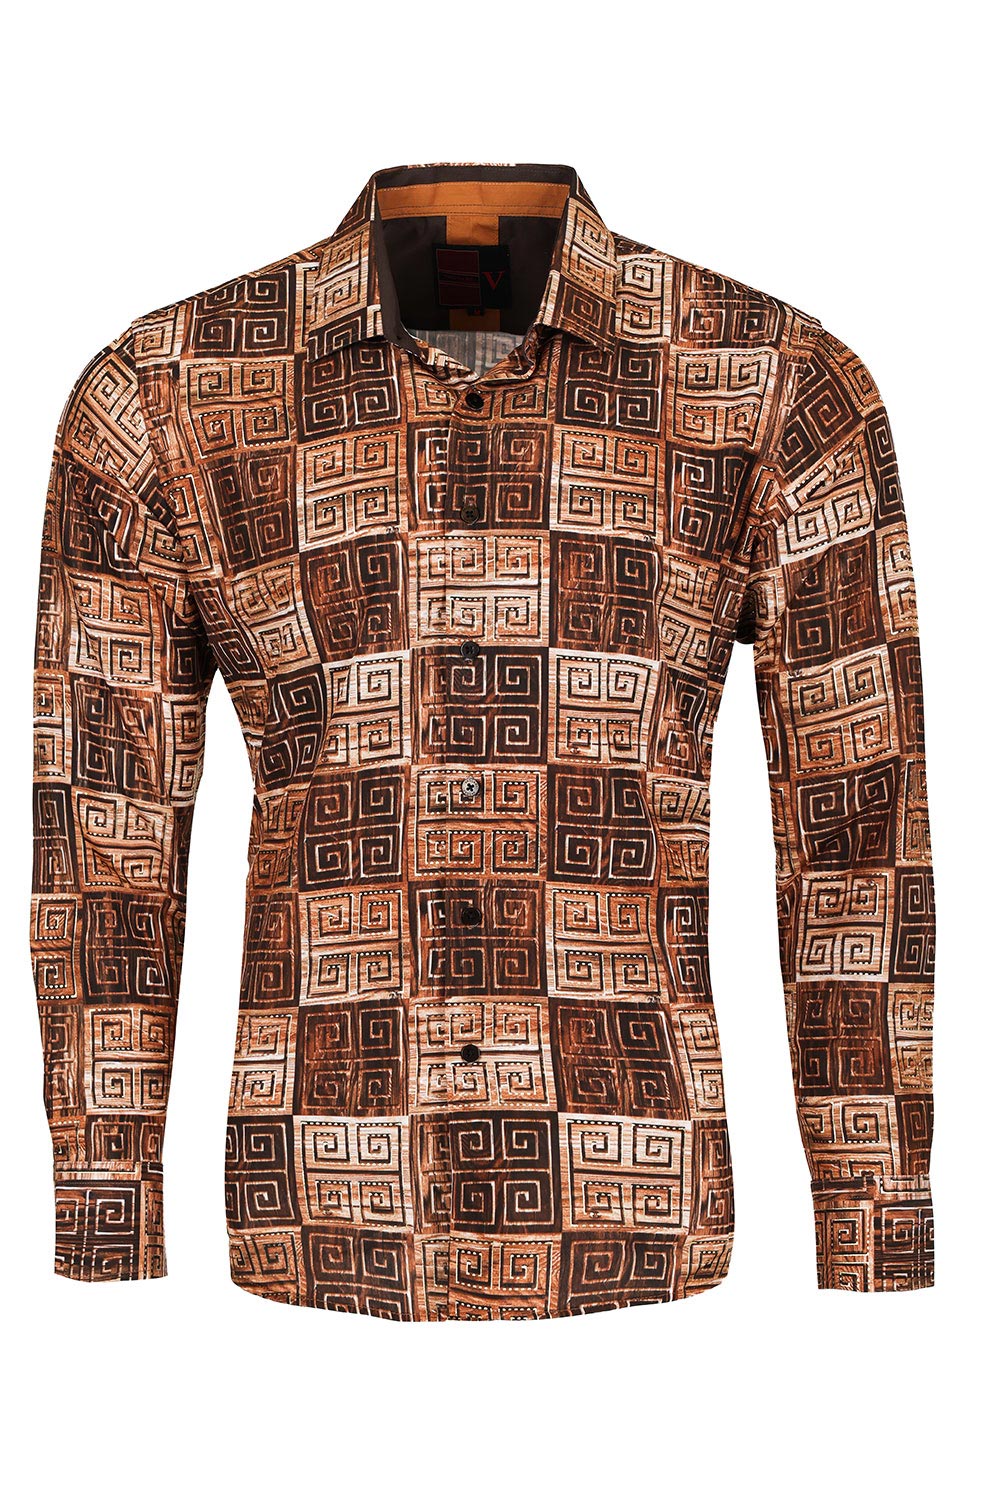 Vassari Men's Printed Multicolor Greek Key Pattern B Shirts VS125 Brown